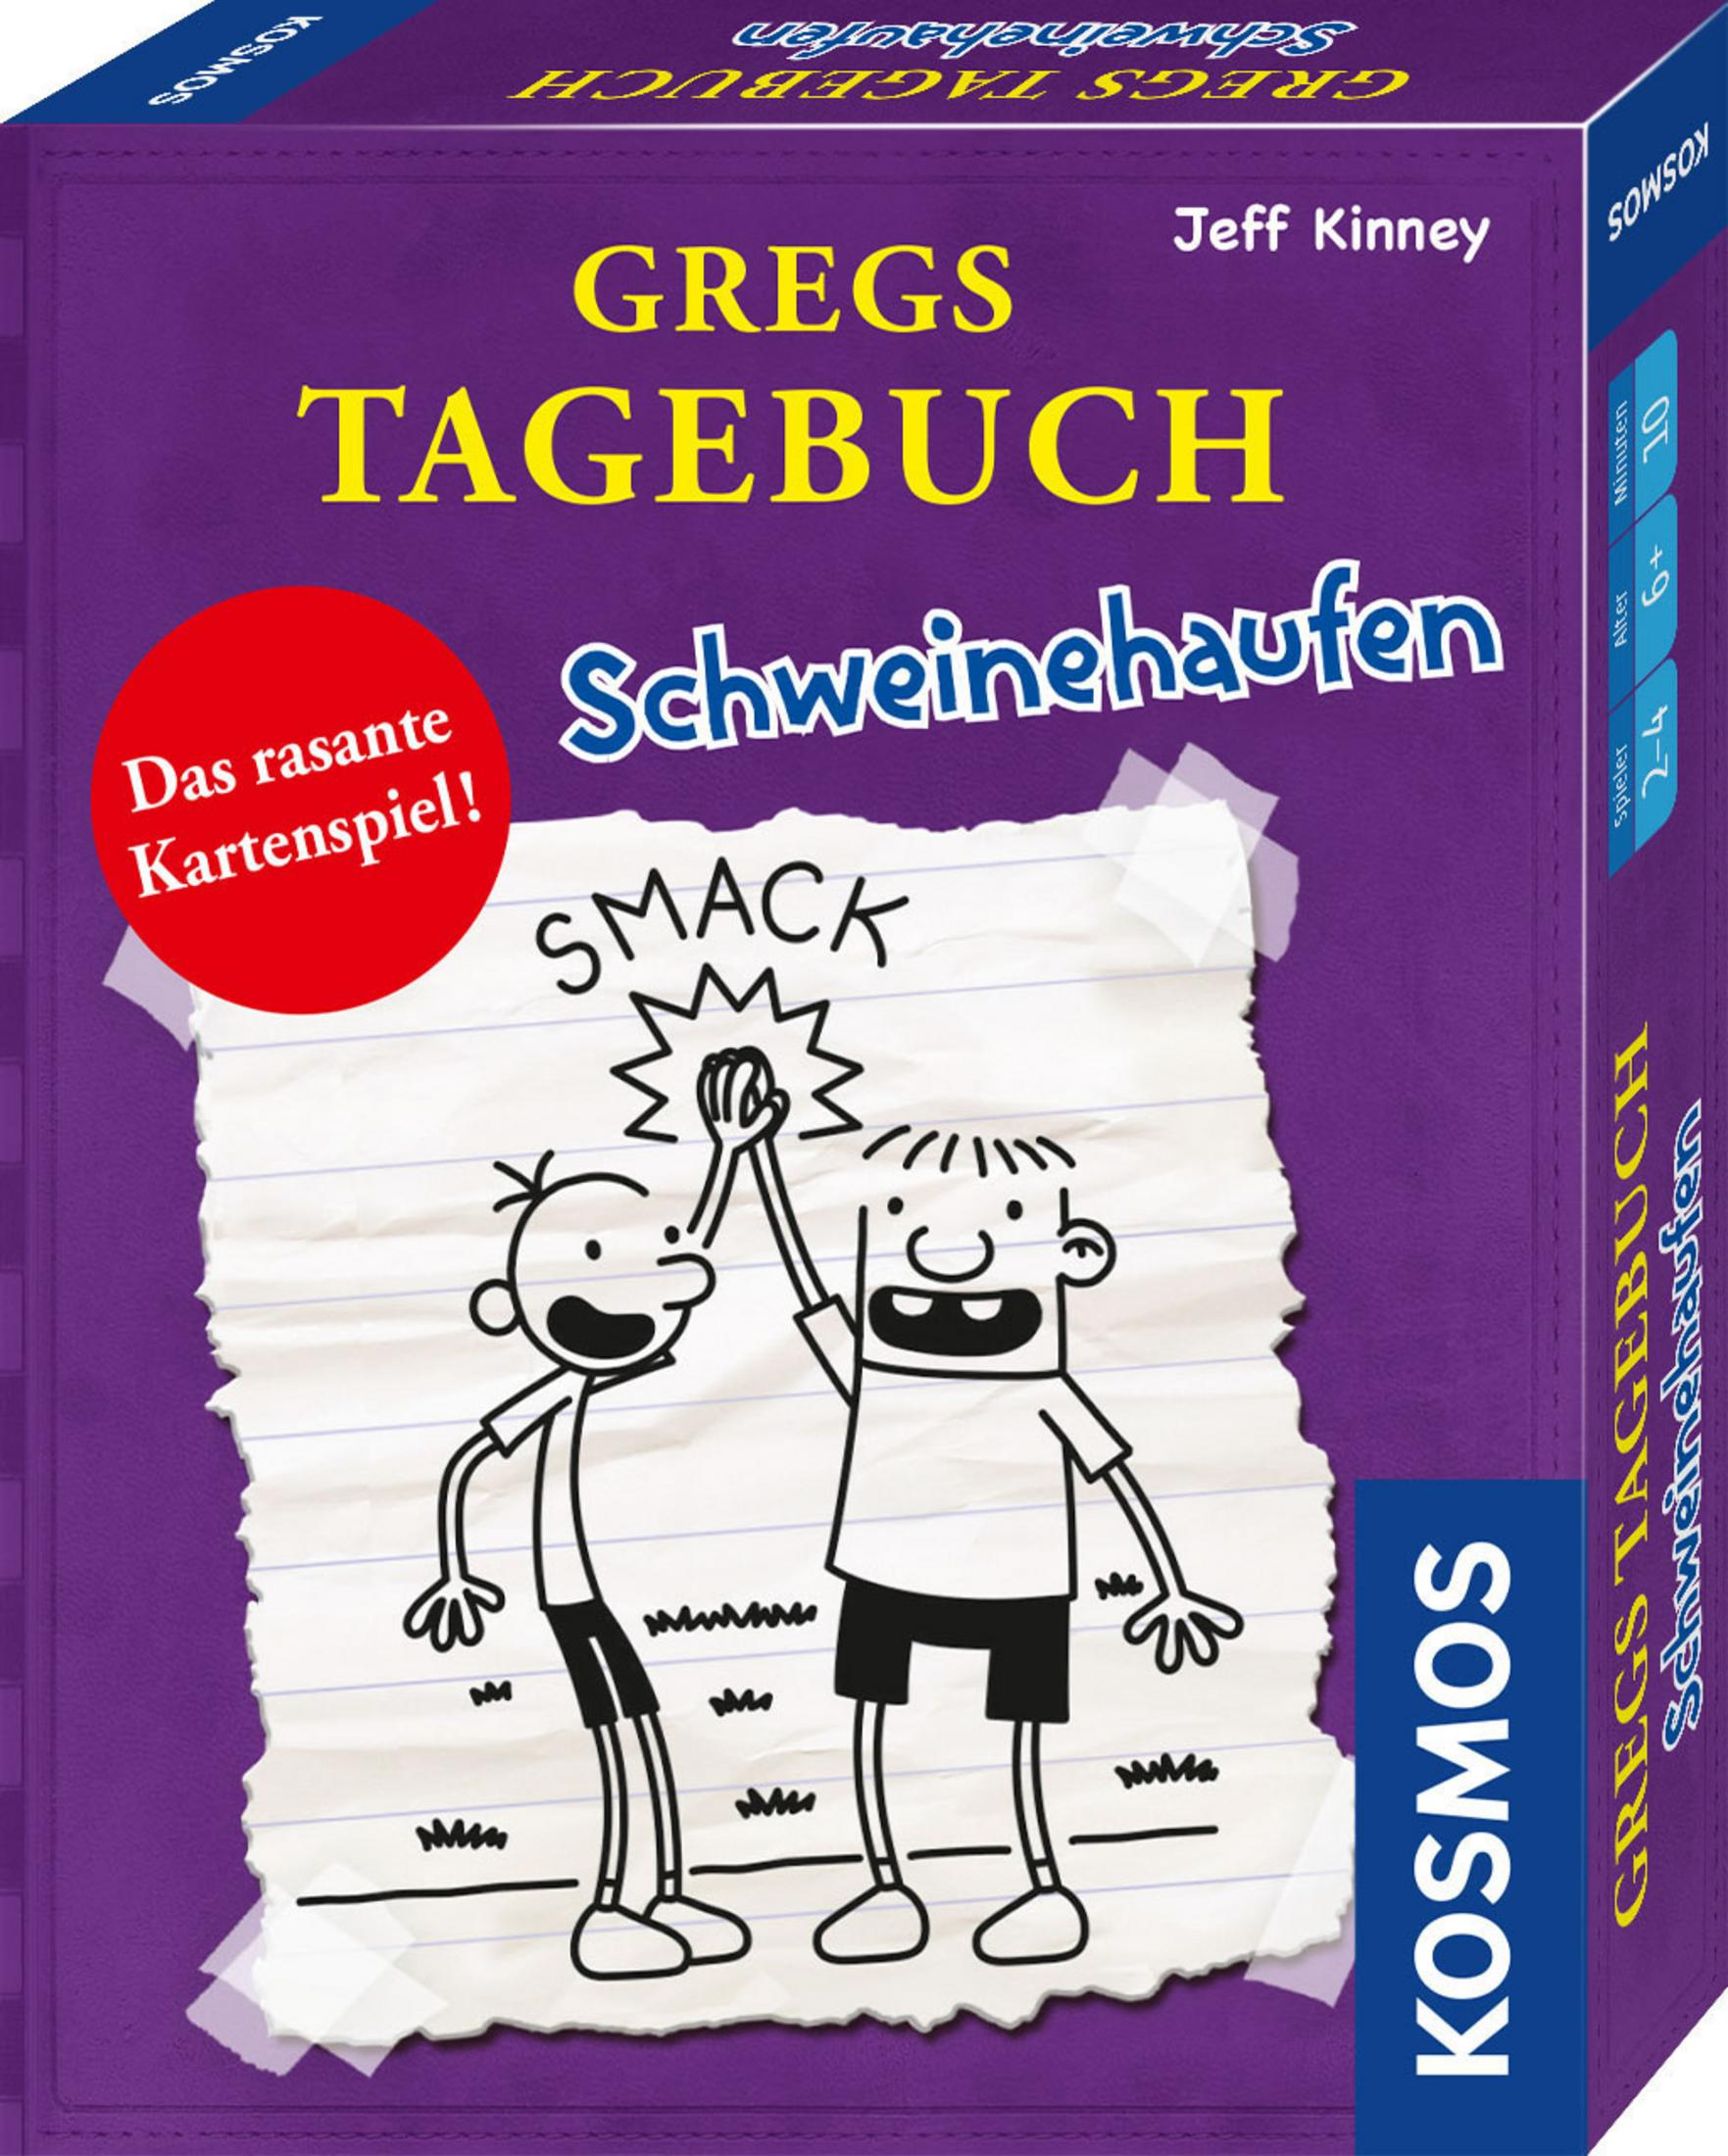 741747 Kartenspiel KOSMOS TAGEBUCH-SCHWEINEHAUFEN GREGS Mehrfarbig (KARTENSPIEL)